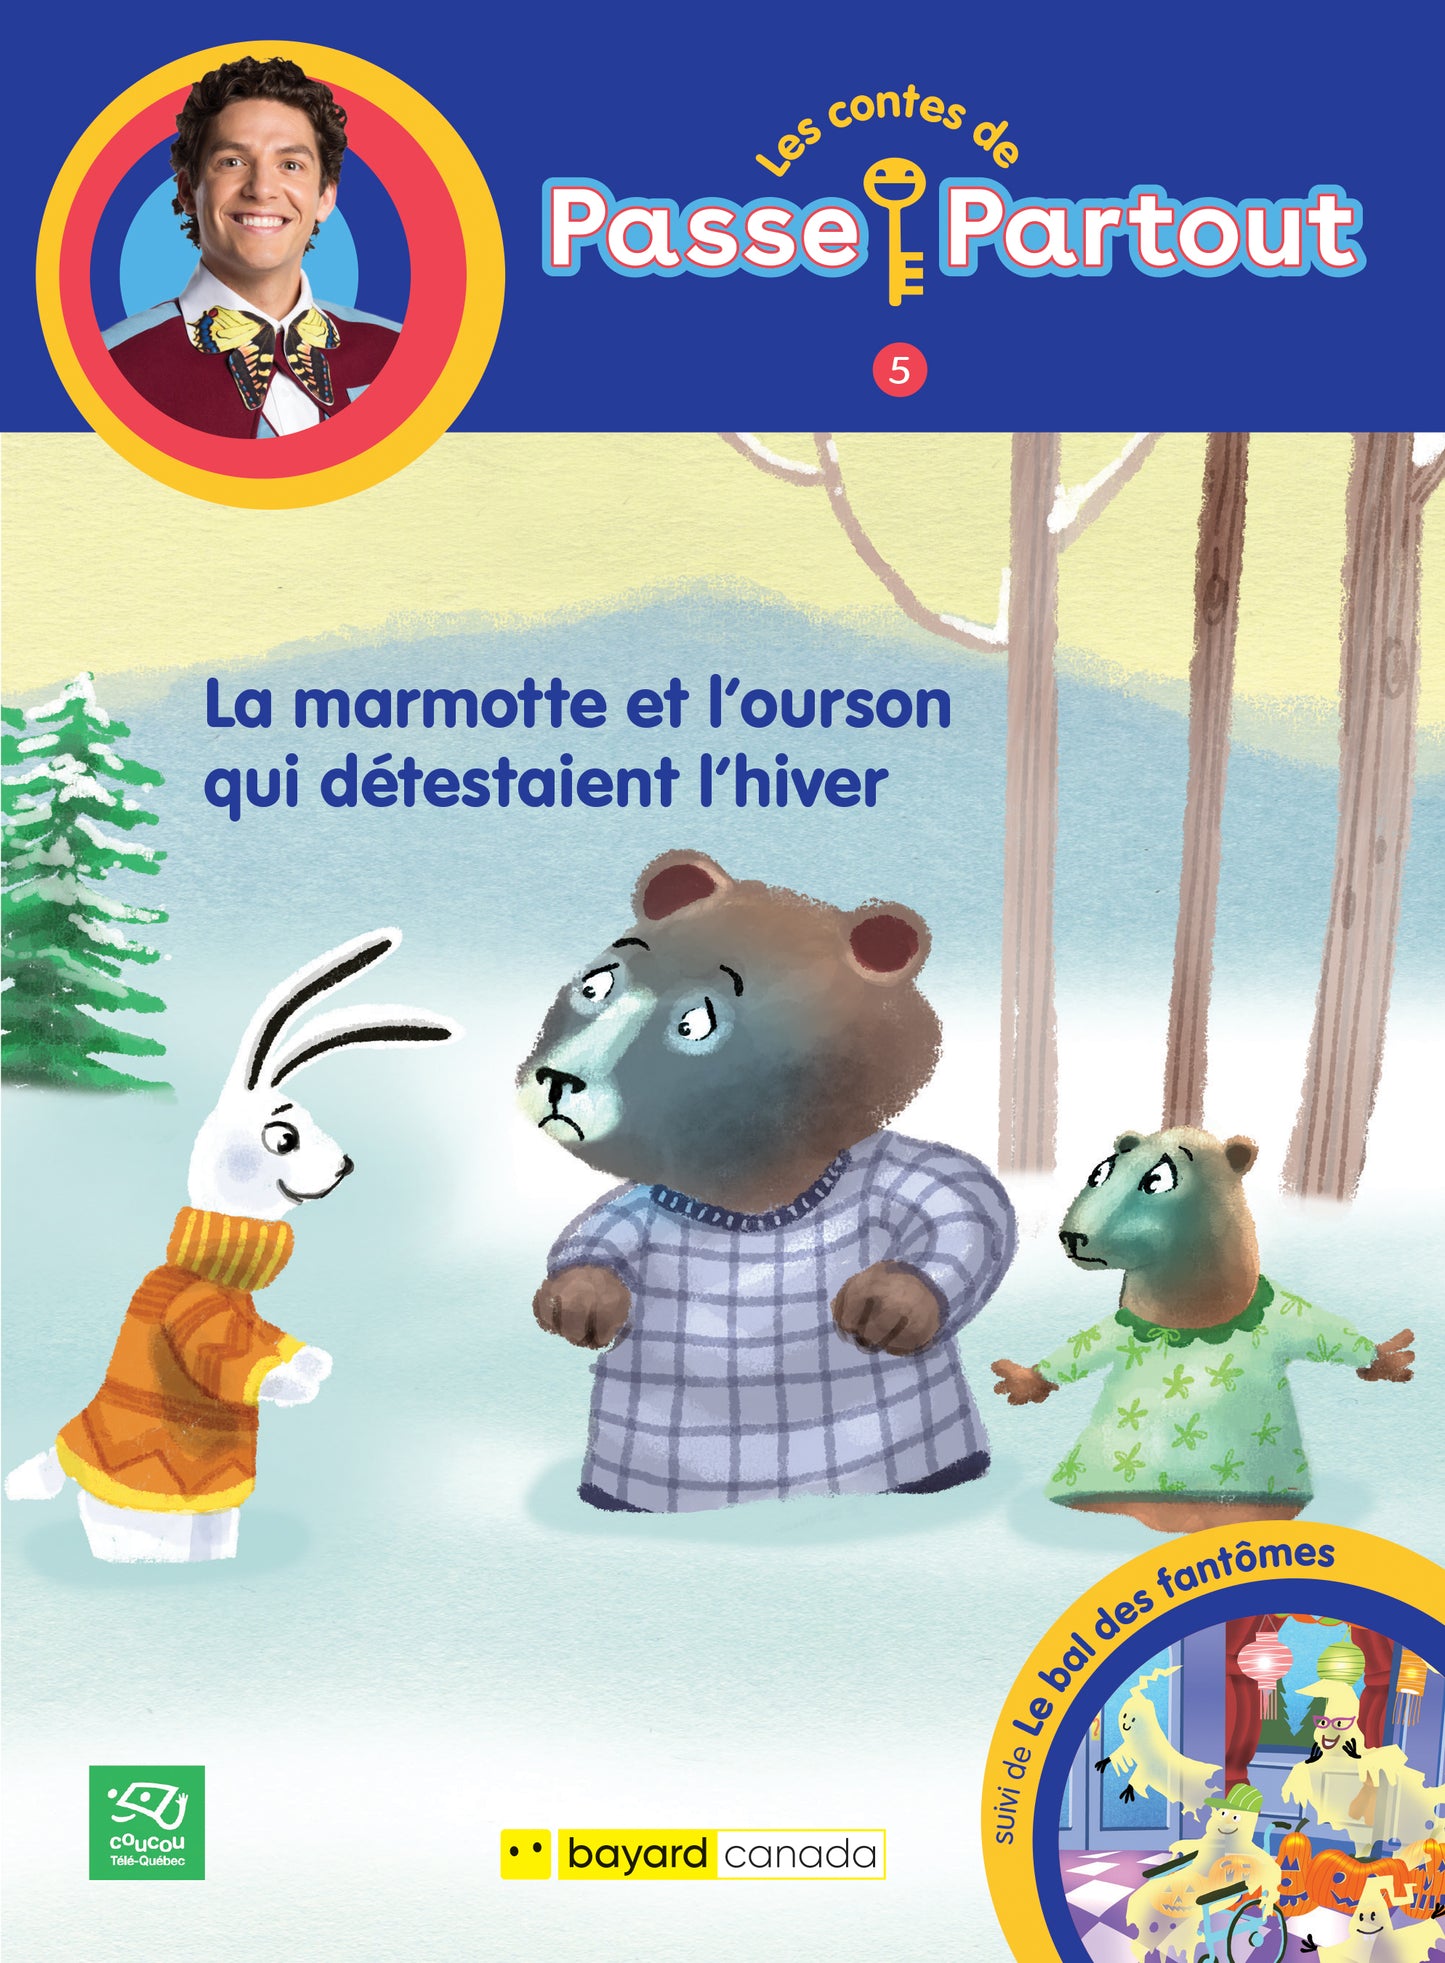 1. La marmotte et l’ourson qui détestaient l’hiver